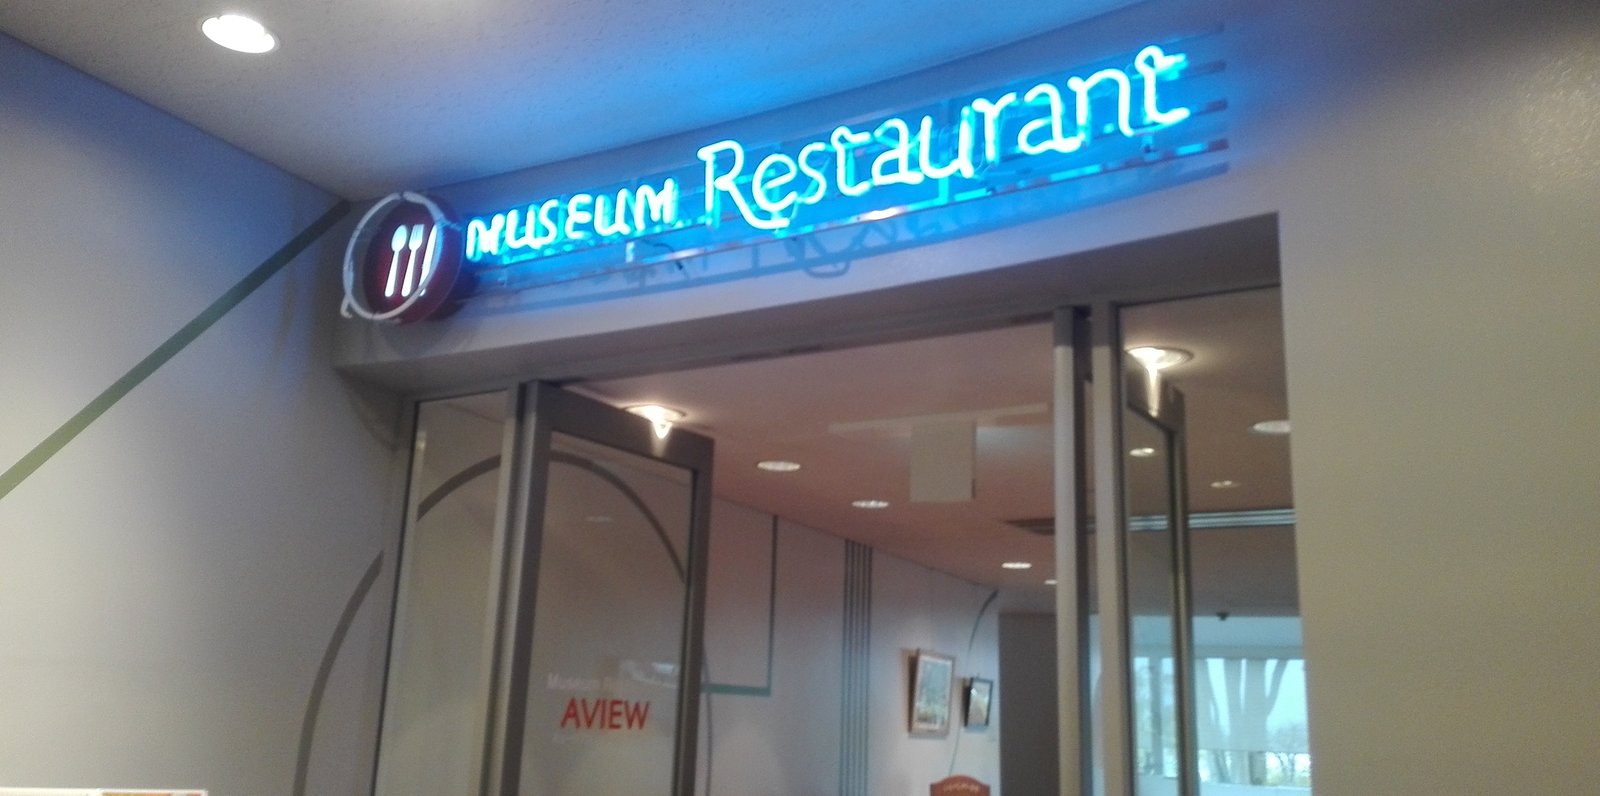 トヨタ博物館ミュージアムレストラン AVIEW